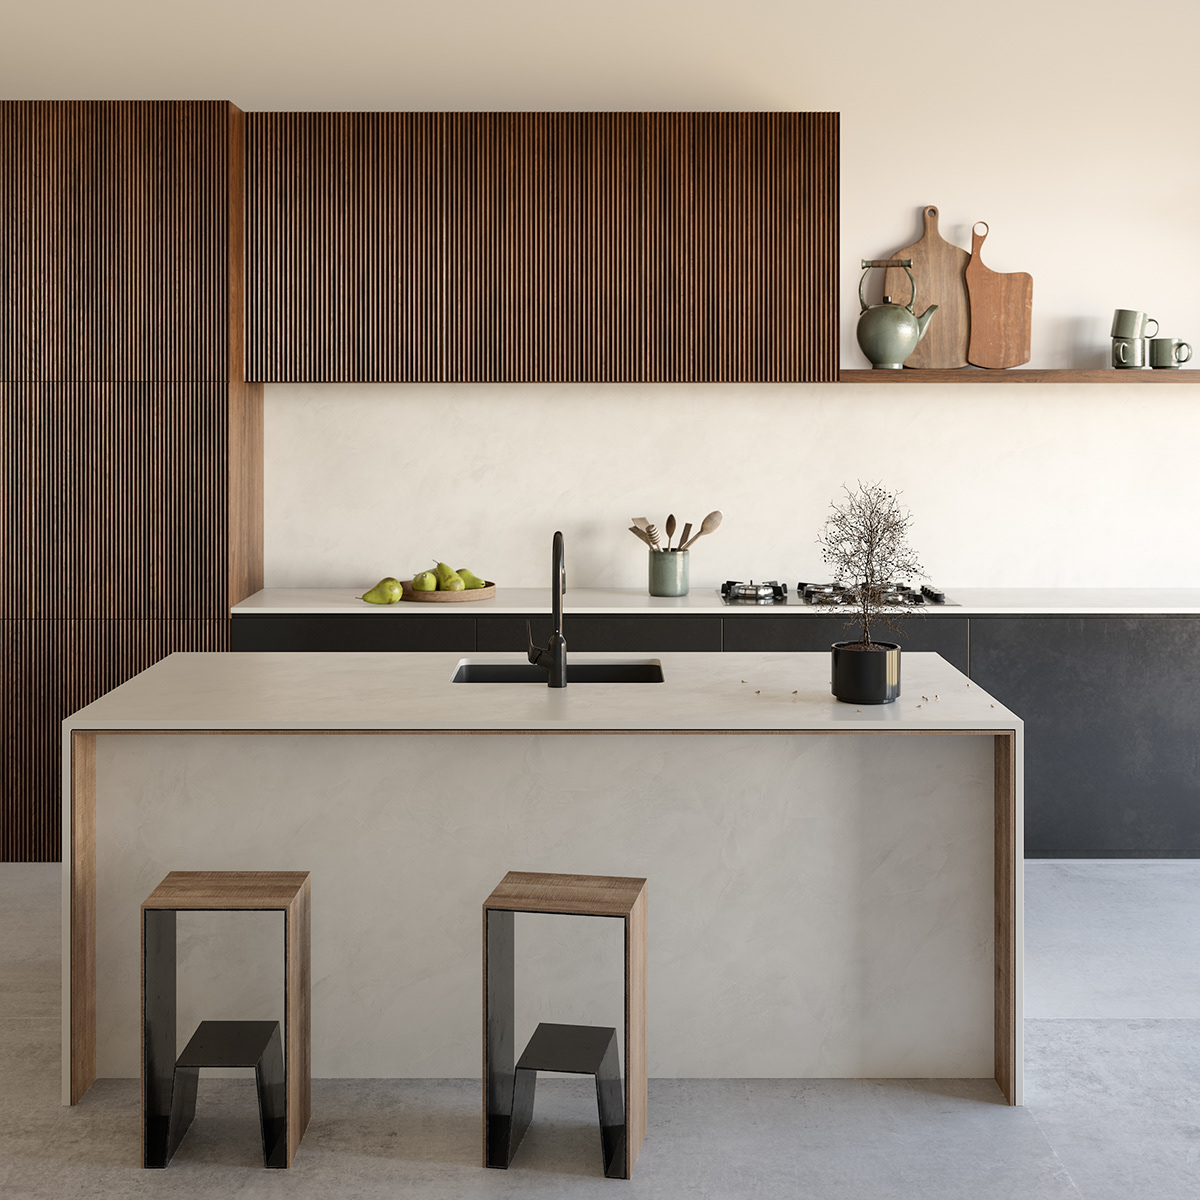 albarium architecture black CGI corona render  Cosentino interiordesign kitchen pears visualization